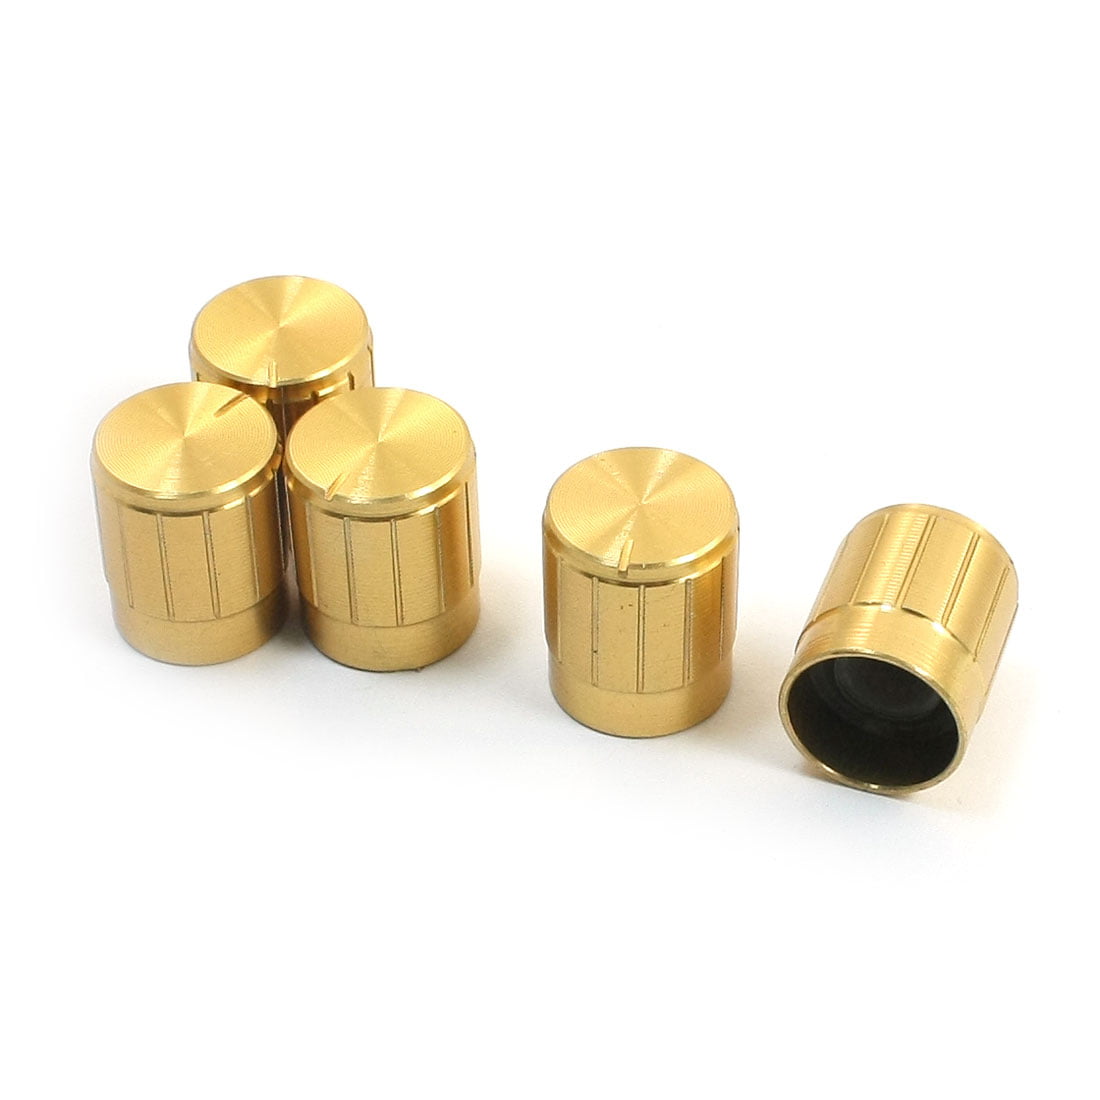 Gold Potentiometer Knob 15 x 17mm Shaft Aluminum Knurled Pot 6mm Control Caps 